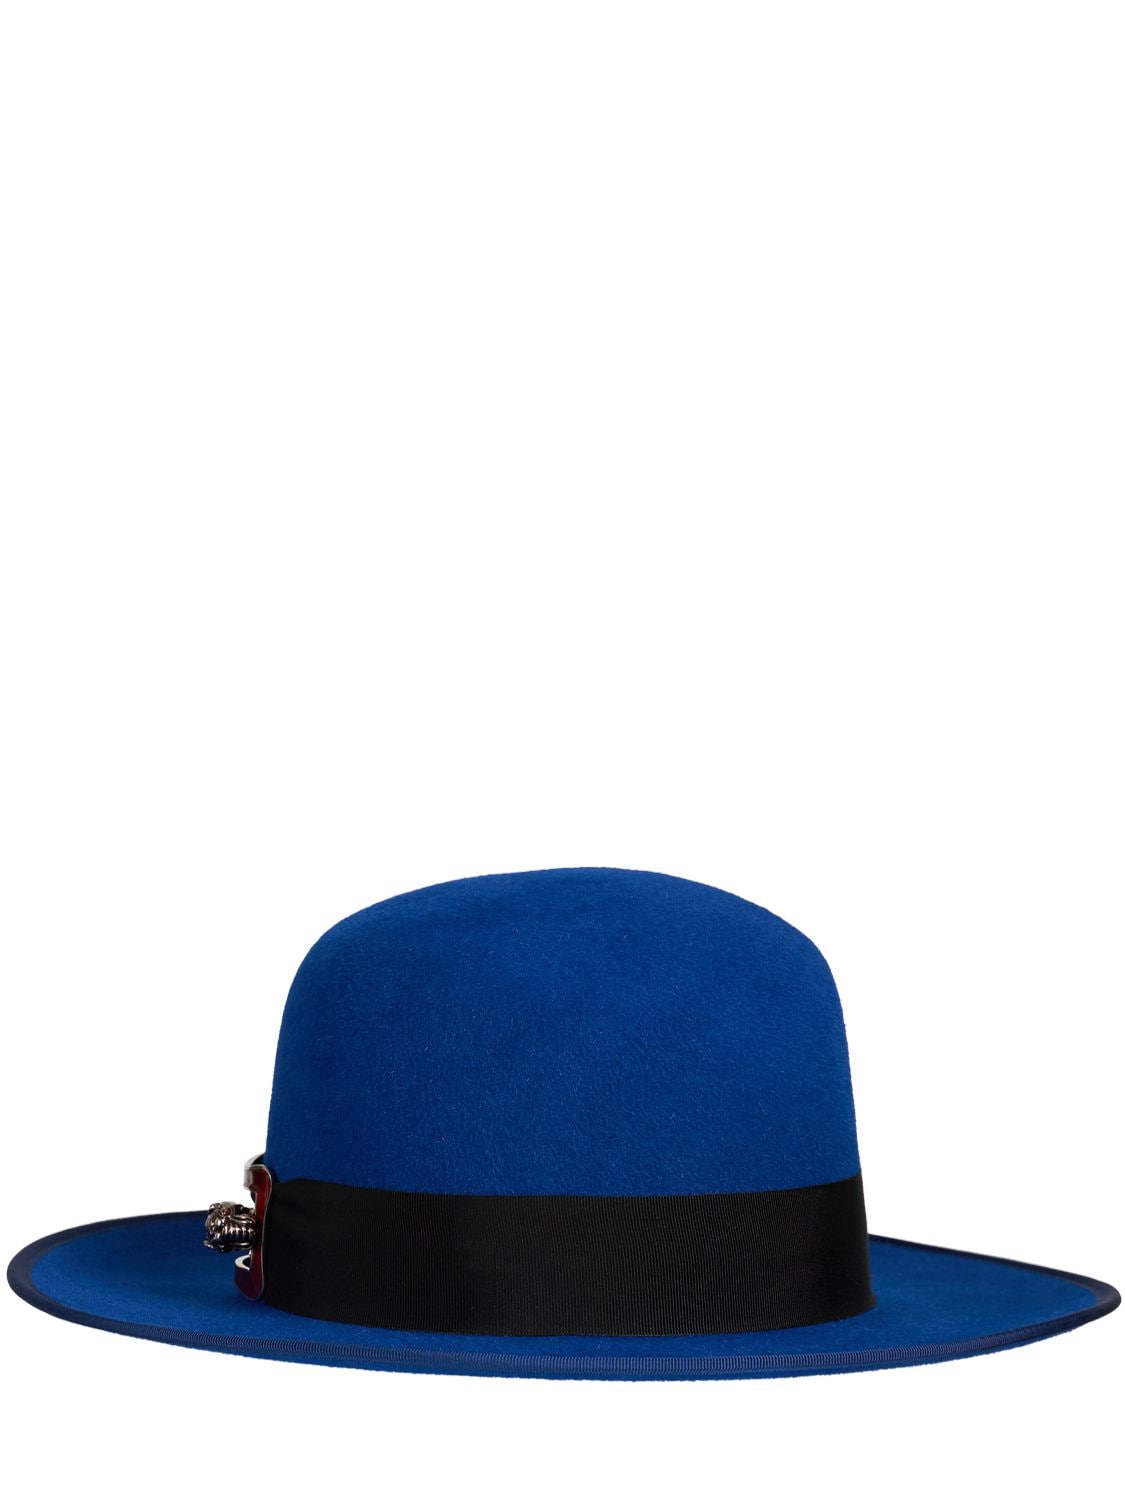 GUCCI 毛毡帽子,75IFQS037-NDM2MA2